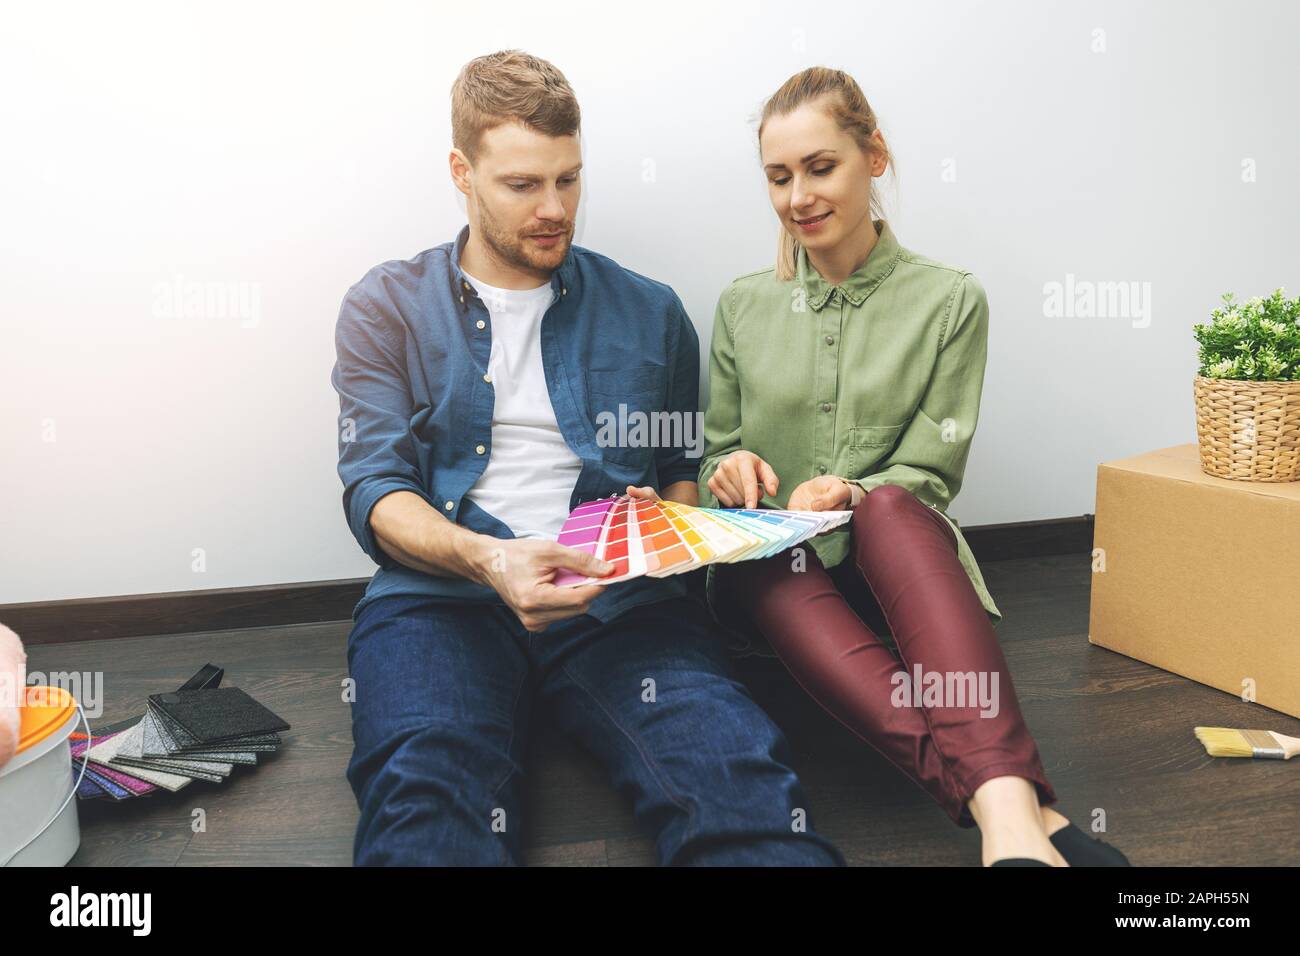 giovane coppia seduto sul pavimento in camera e scegliendo il colore della vernice dai campioni per il nuovo design degli interni Foto Stock